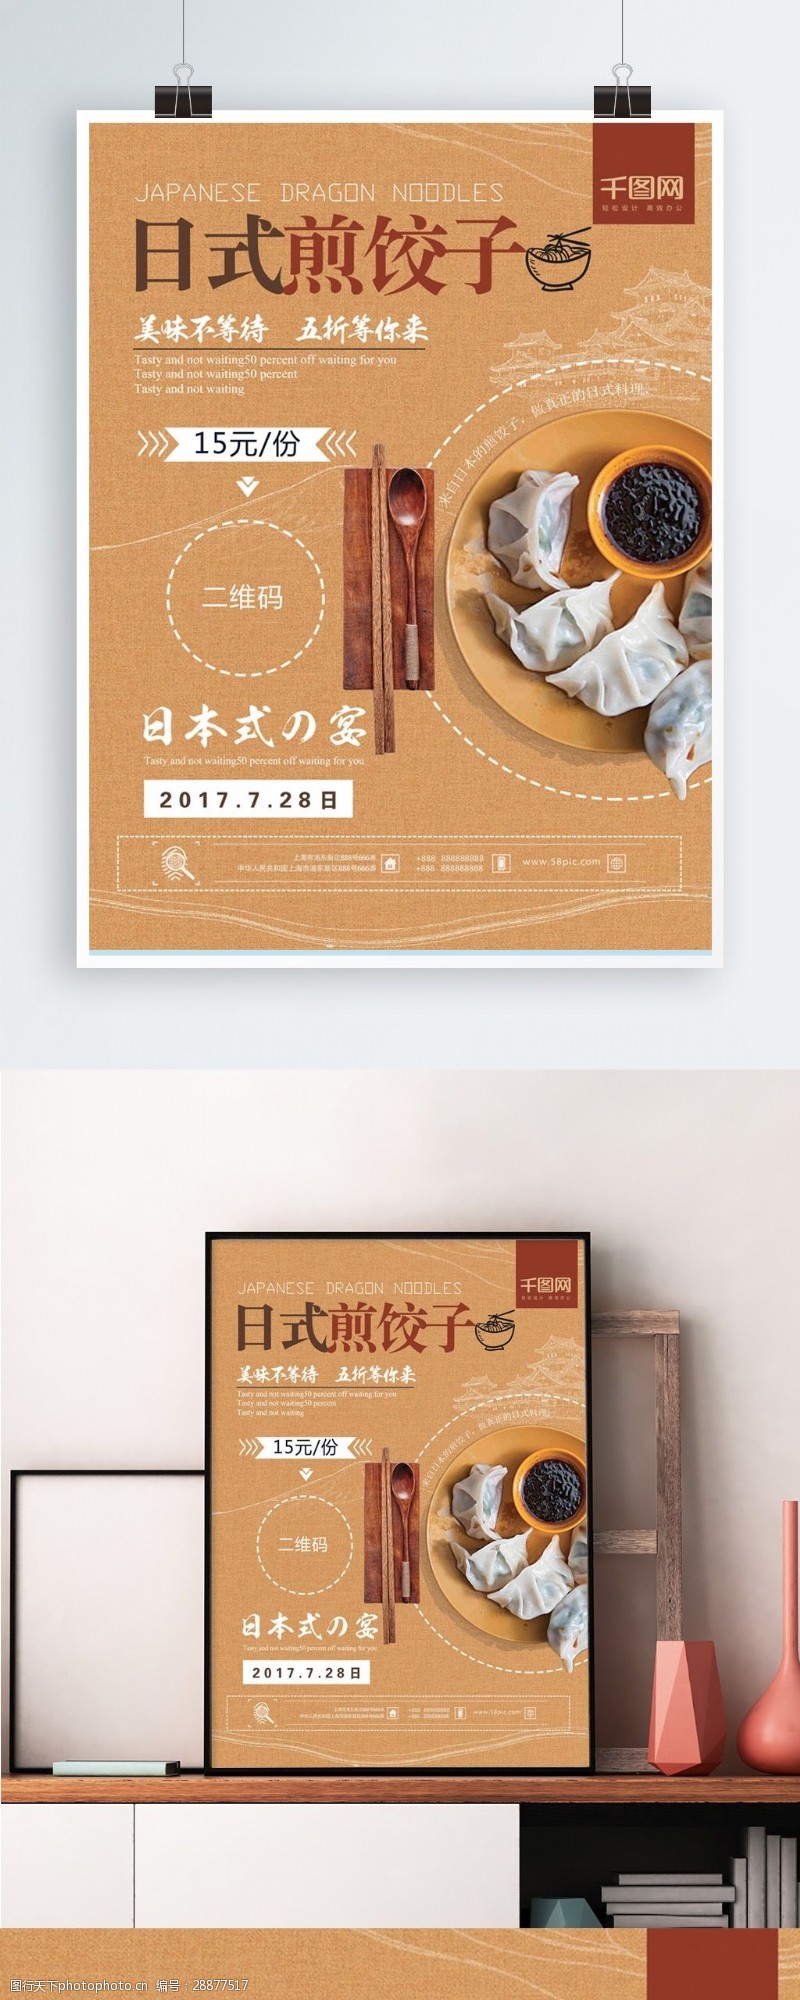 冬季新品上简约清新日式香煎饺子美食新品上市促销海报